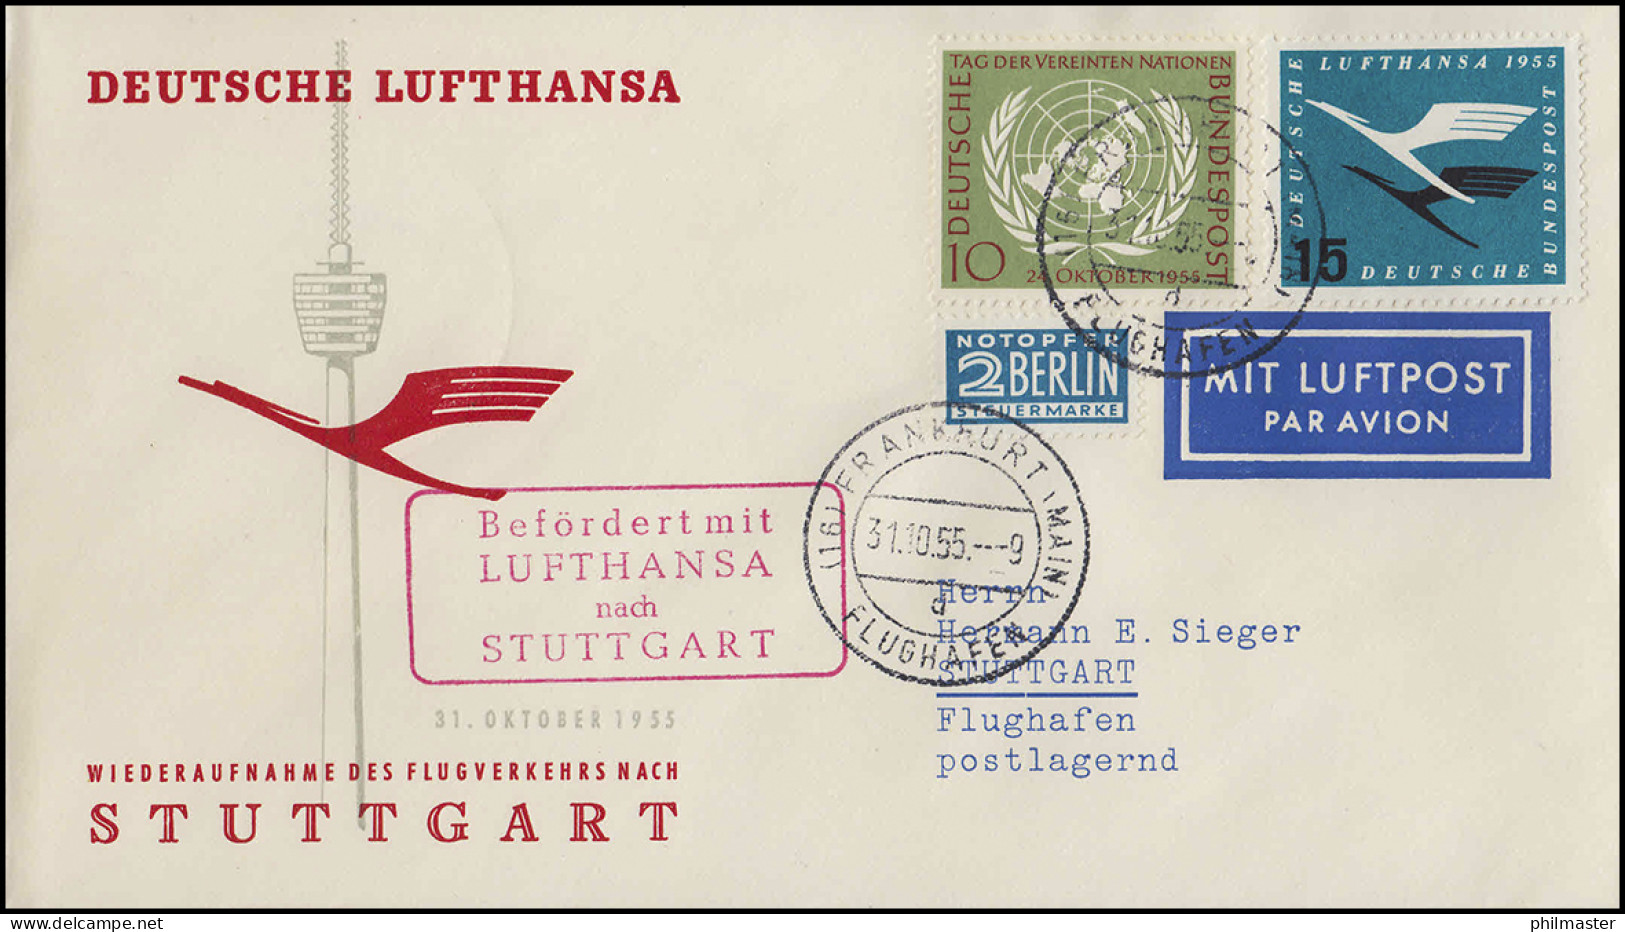 Luftpost Lufthansa Wiederaufnahme Inland, Frankfurt Main/ Stuttgart 31.10.1955 - Primeros Vuelos